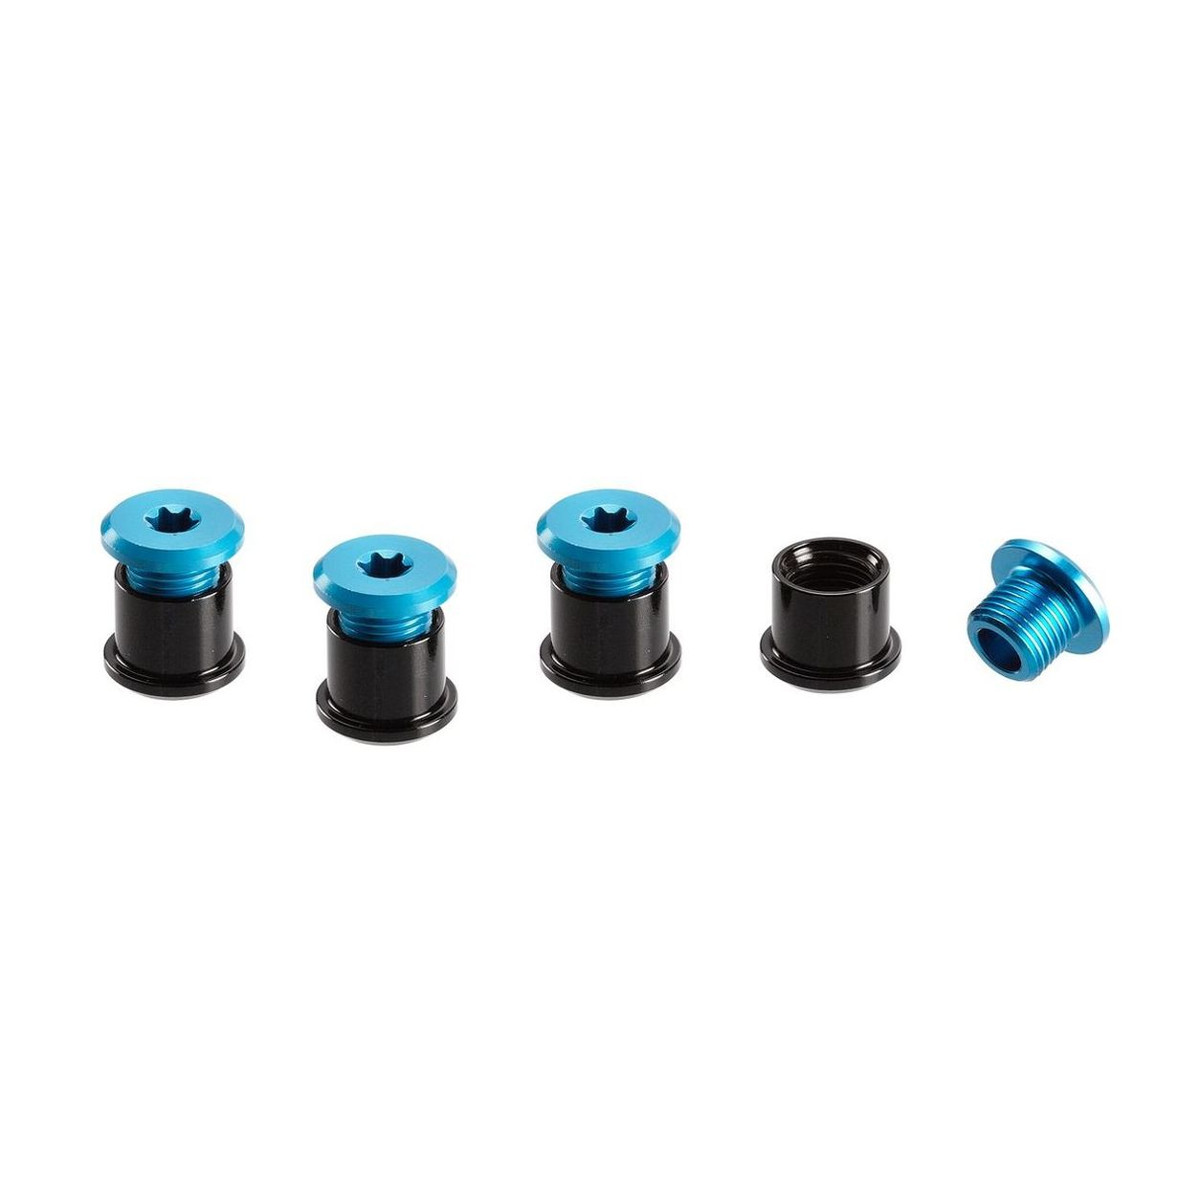 E*thirteen Kit Viti Corona  Blue, Aluminium, T25 6 mm Screws/ T30 7,5 mm Nuts, 4 pcs each